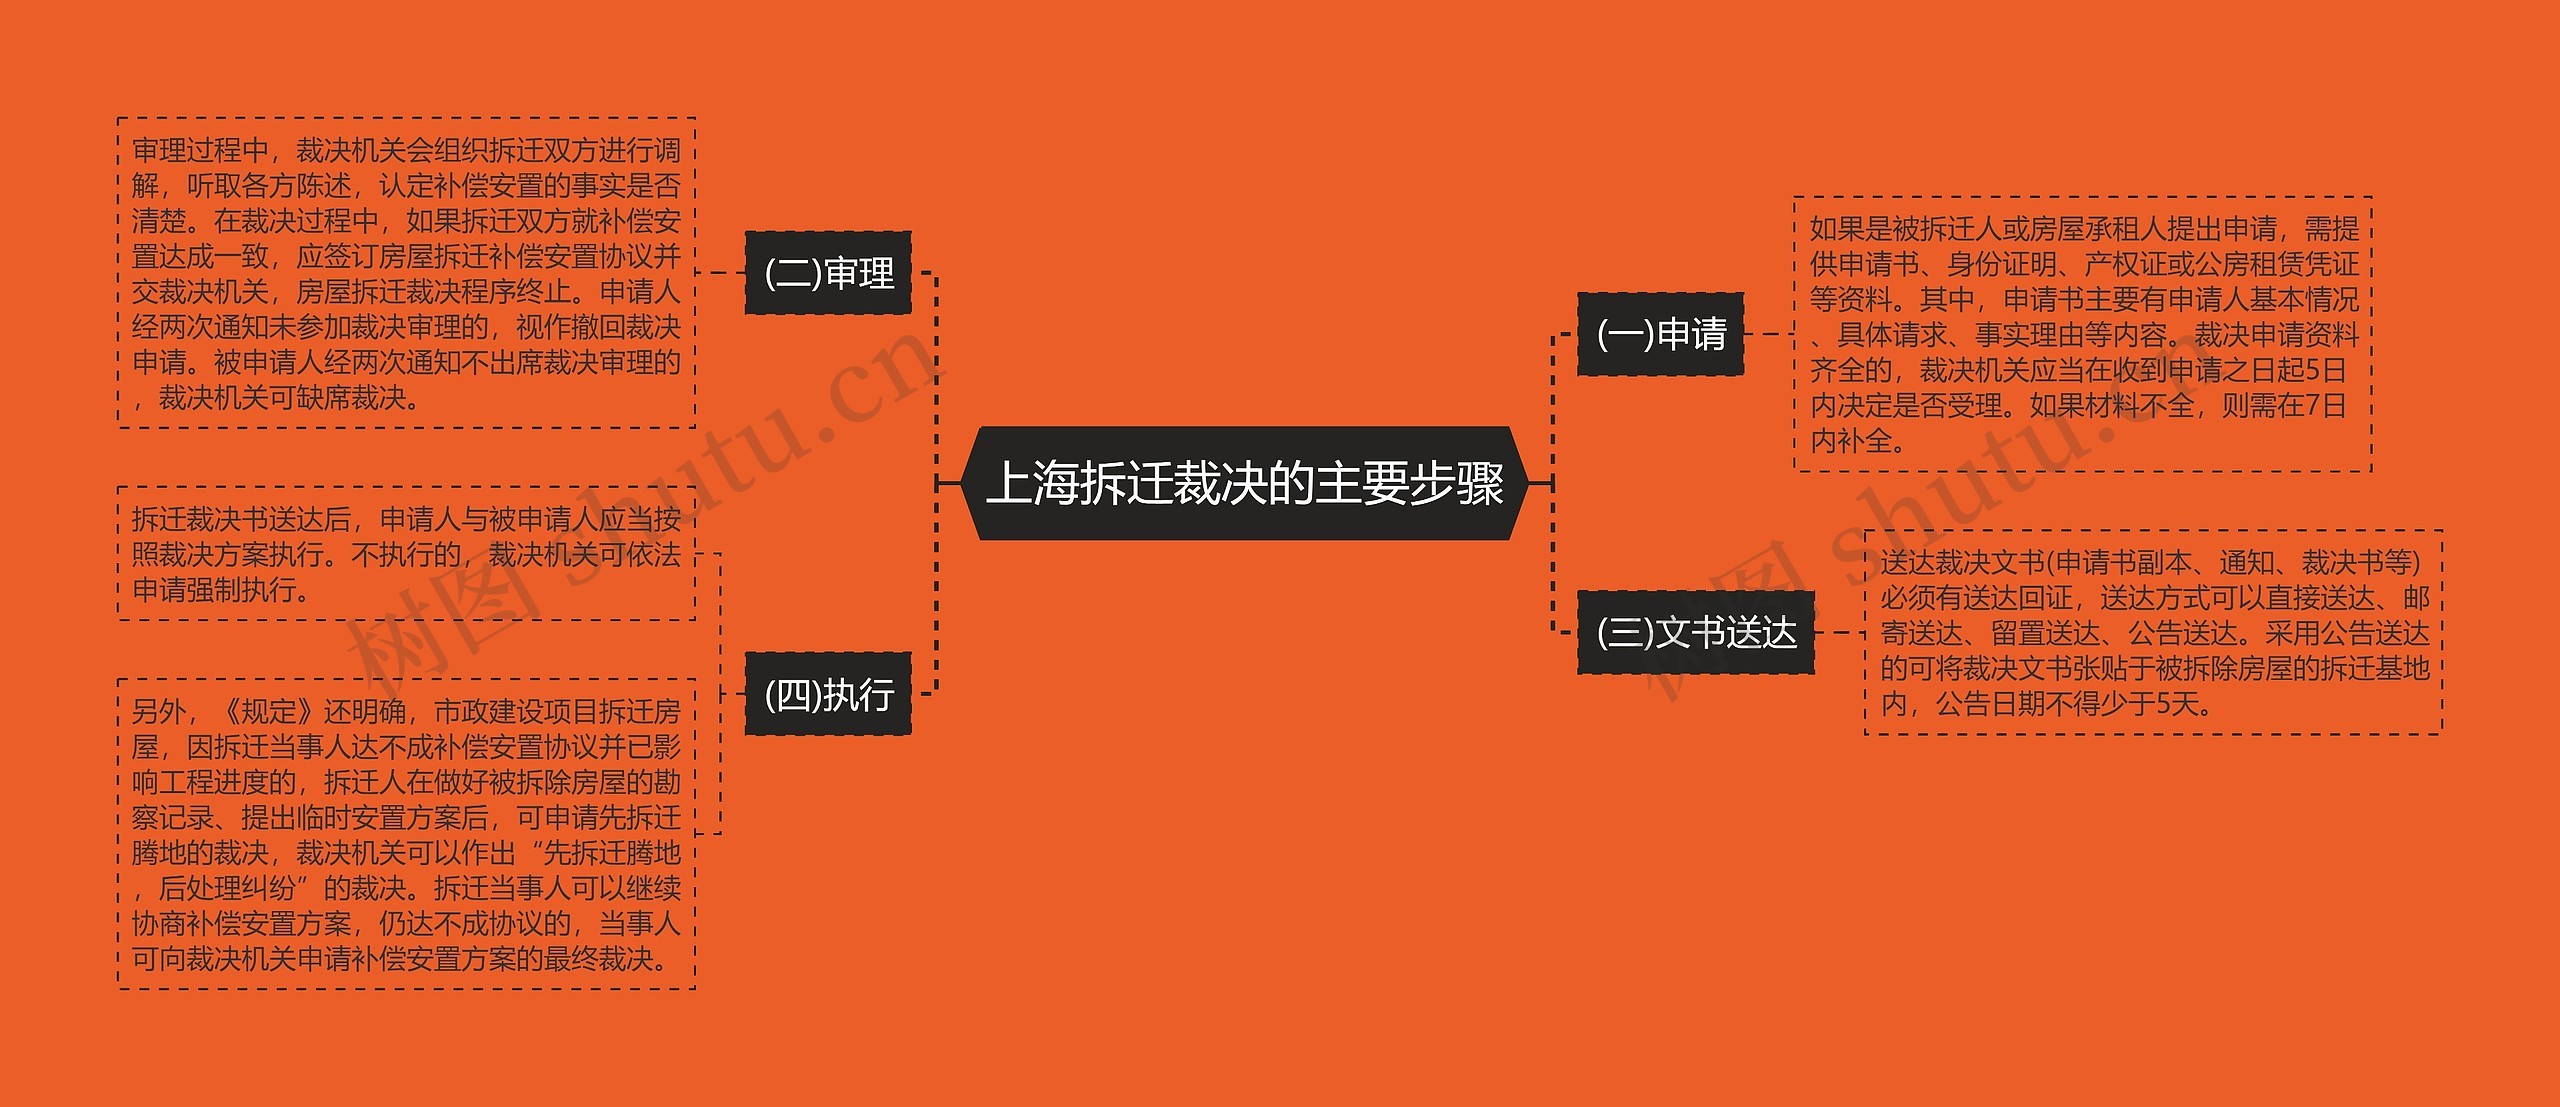 上海拆迁裁决的主要步骤思维导图